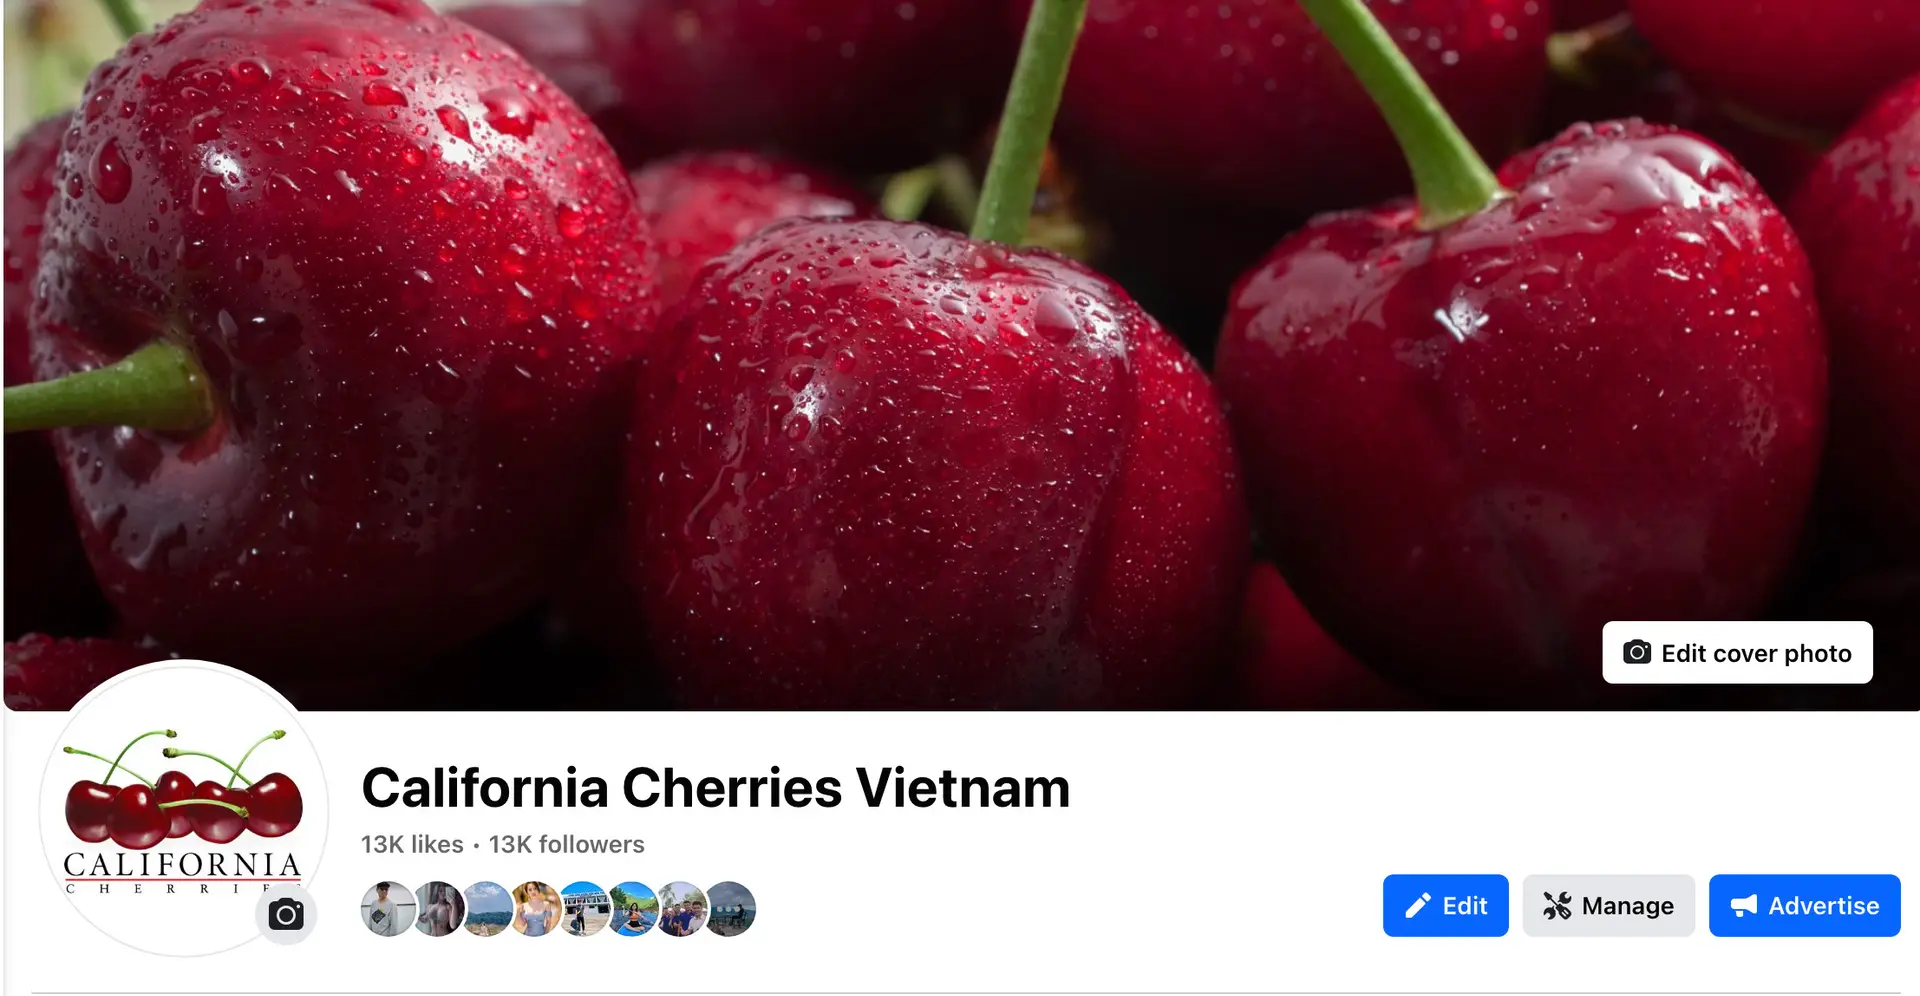 California Cherries Vietnam